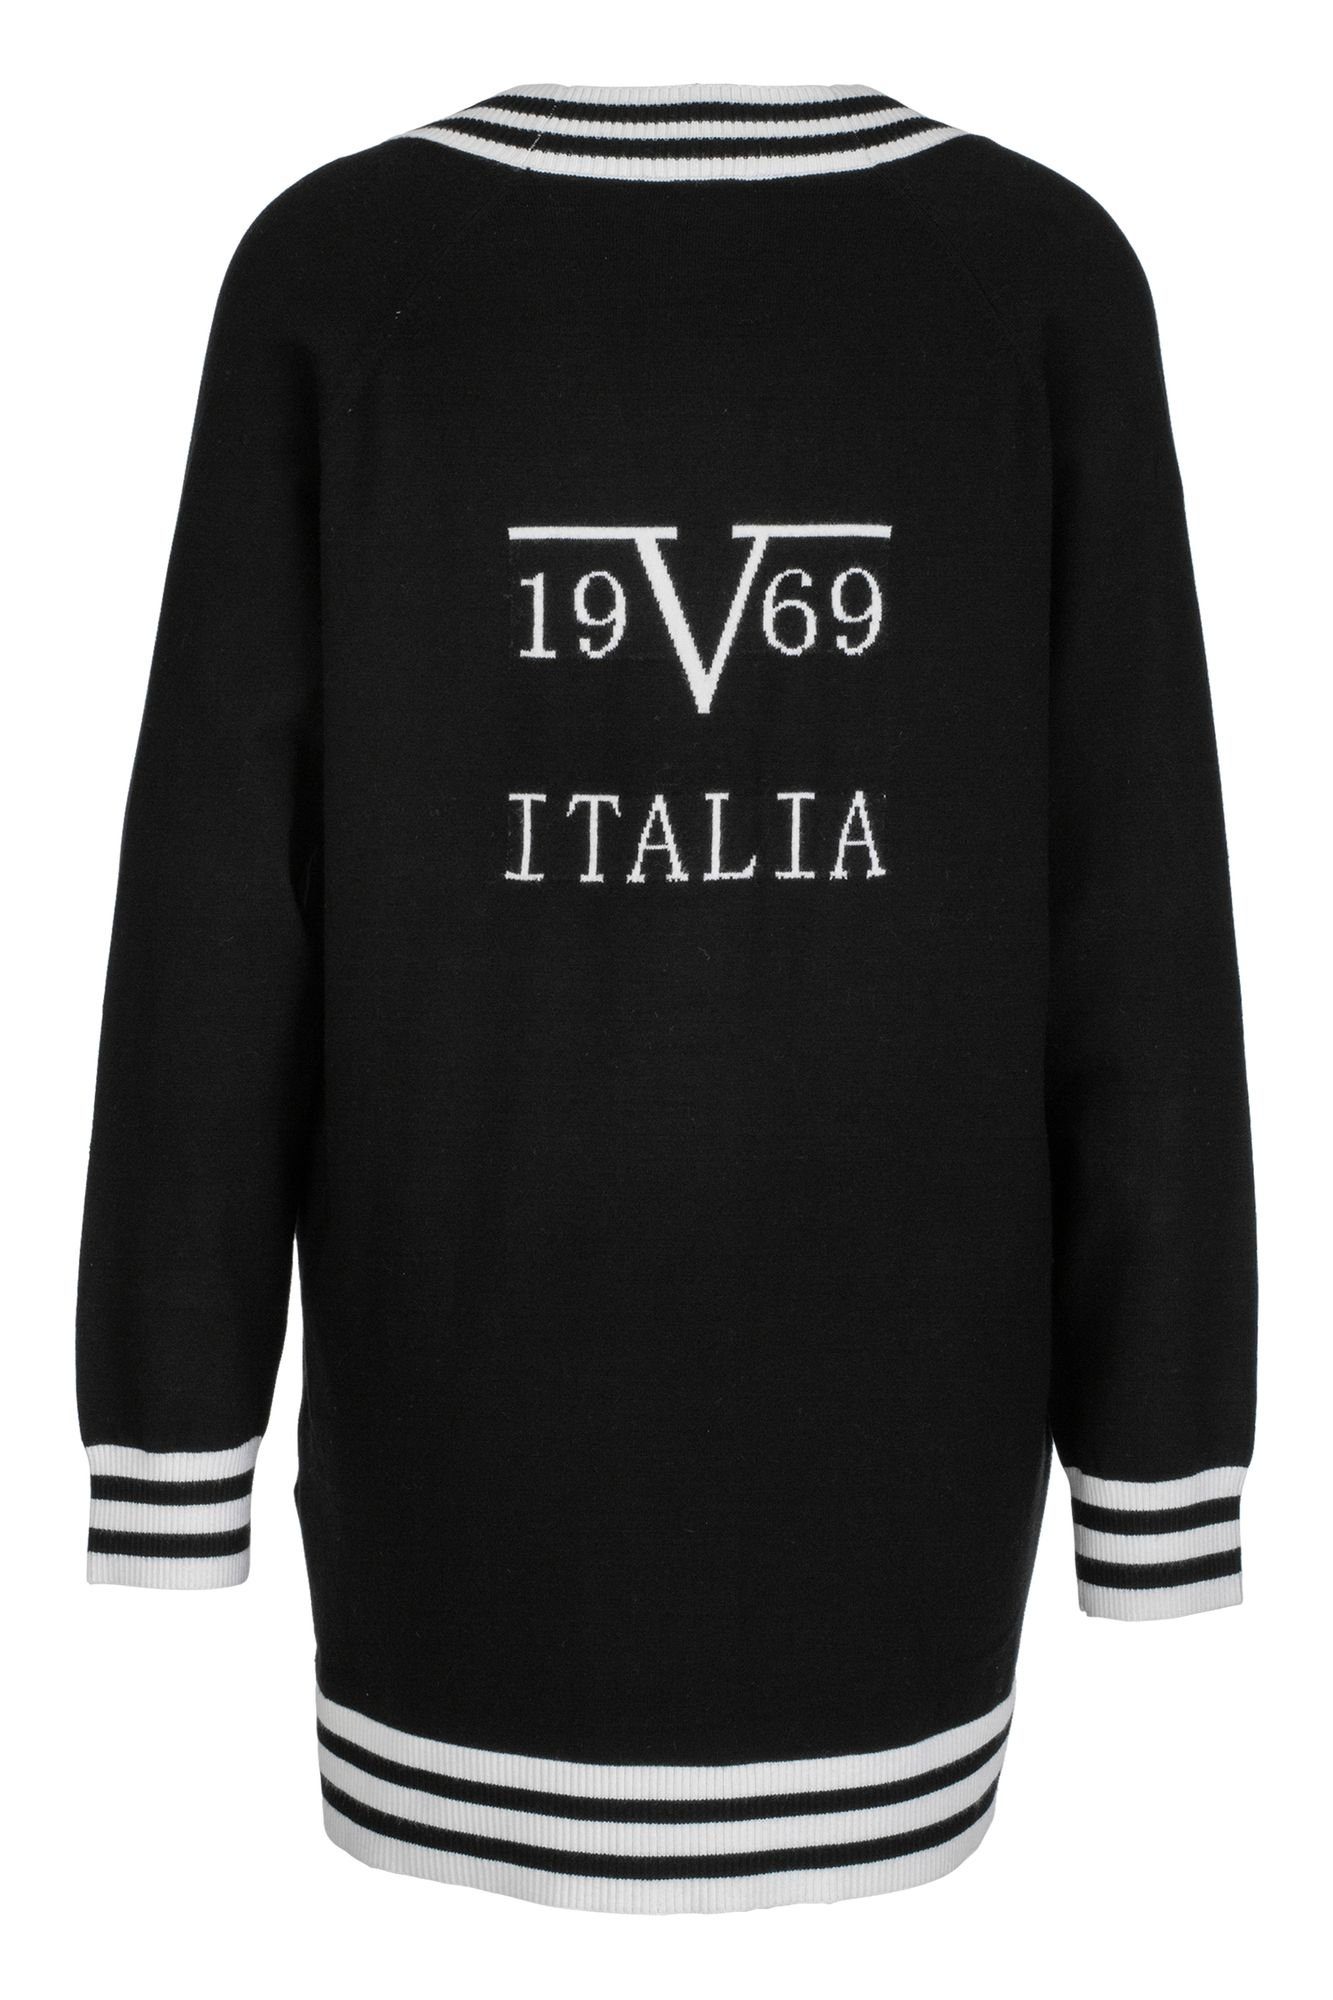 EJ7230 by Versace 19V69 Italia Strickjacke